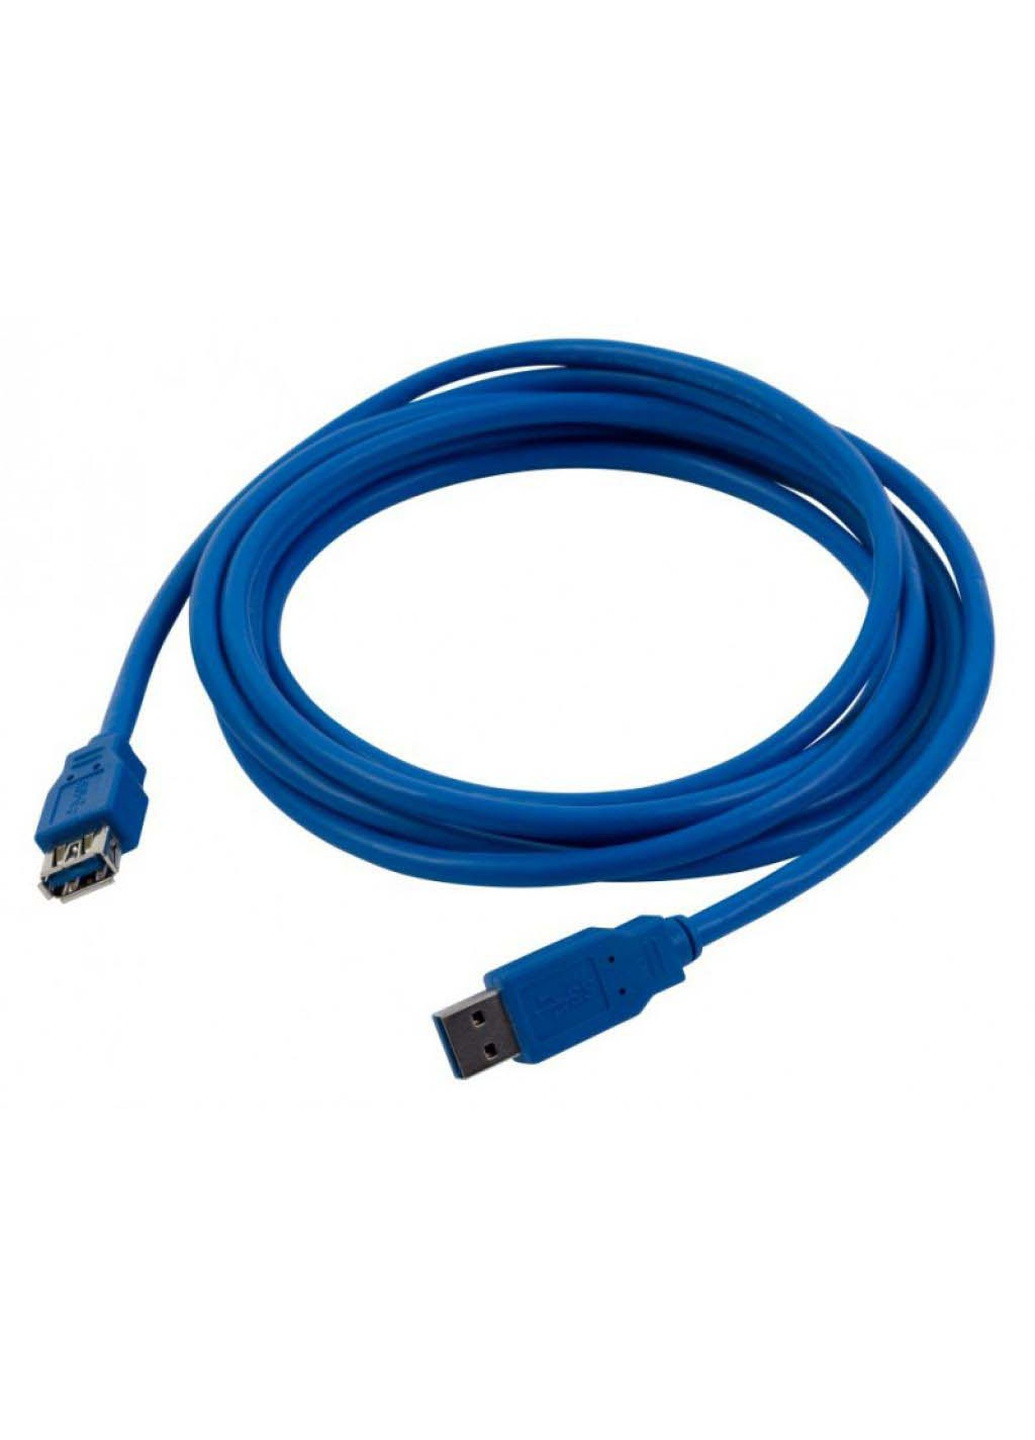 Дата кабель USB 3.0 AM / AF 3.0m (CAB-PN-AMAF3.0-3M) Patron usb 3.0 am/af 3.0m (239382849)